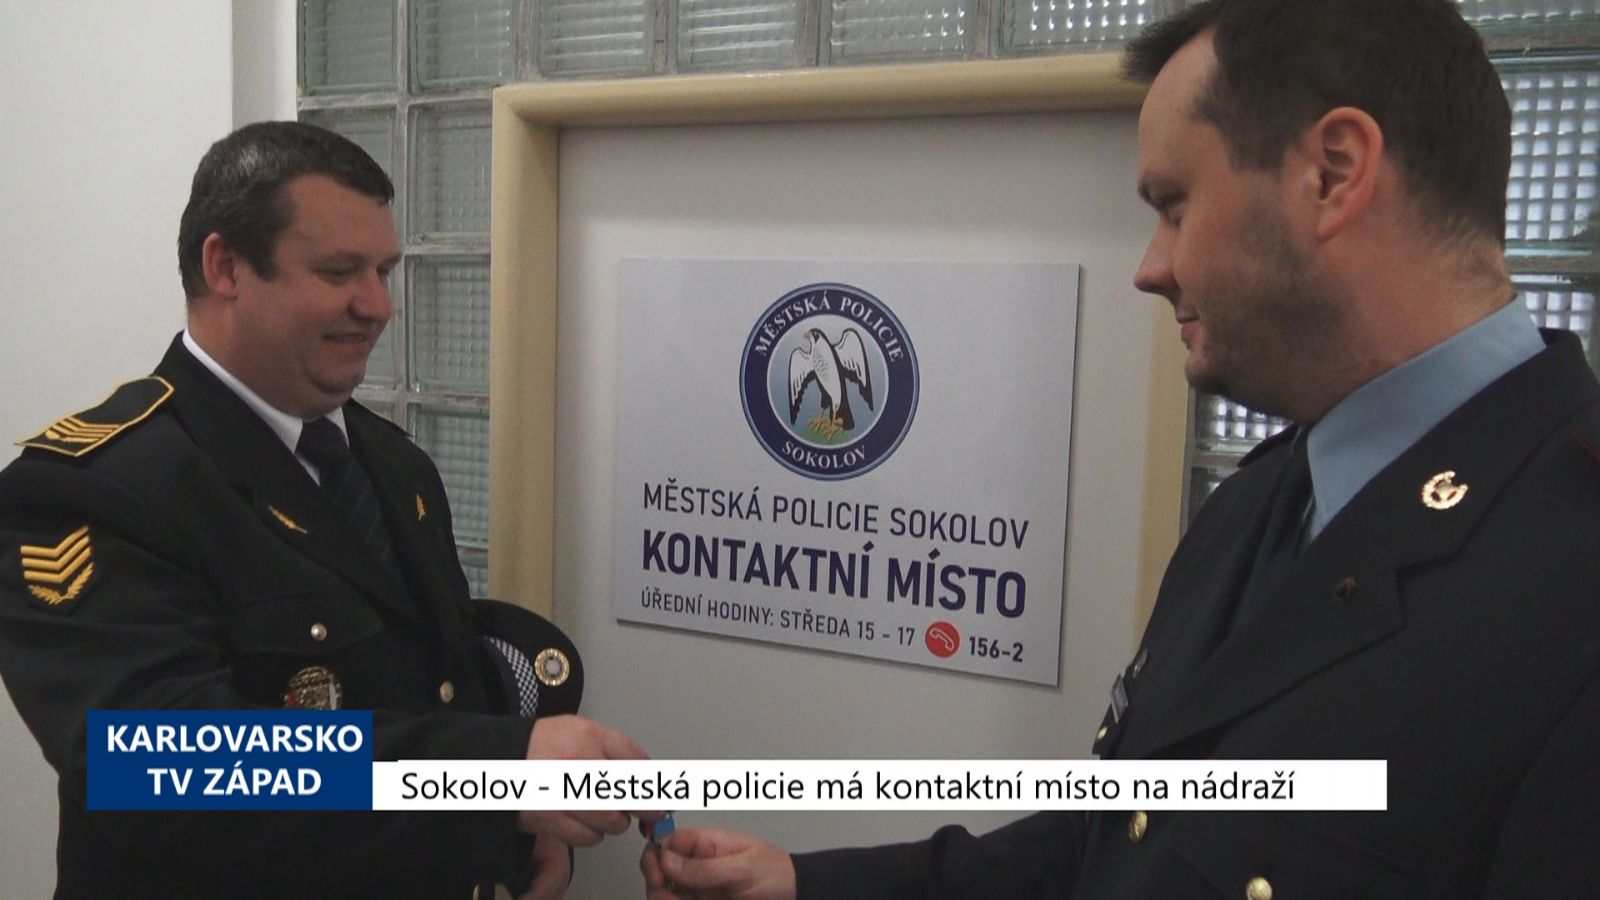 Sokolov: Městská policie má kontaktní místnost na nádraží (TV Západ)